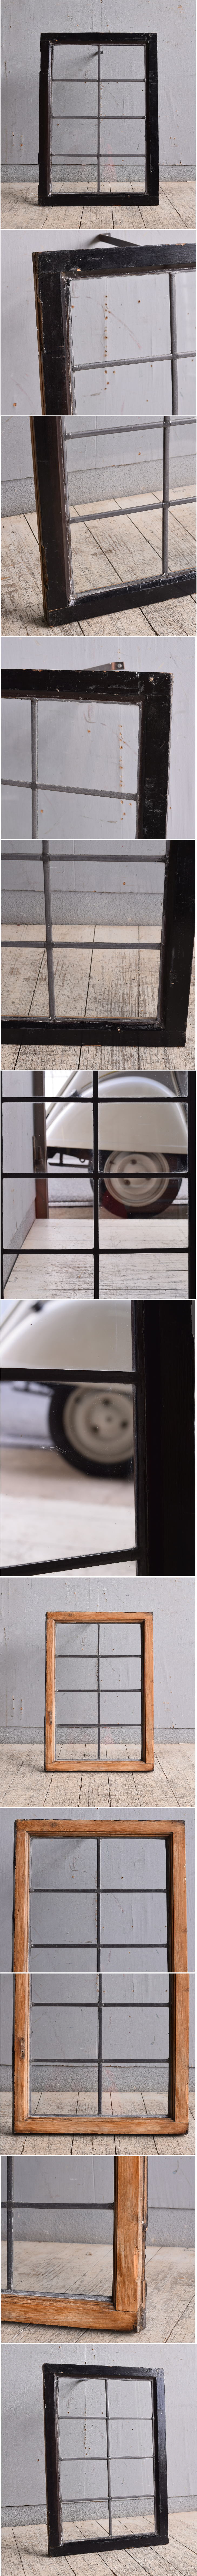 イギリス アンティーク 窓 無色透明 9819